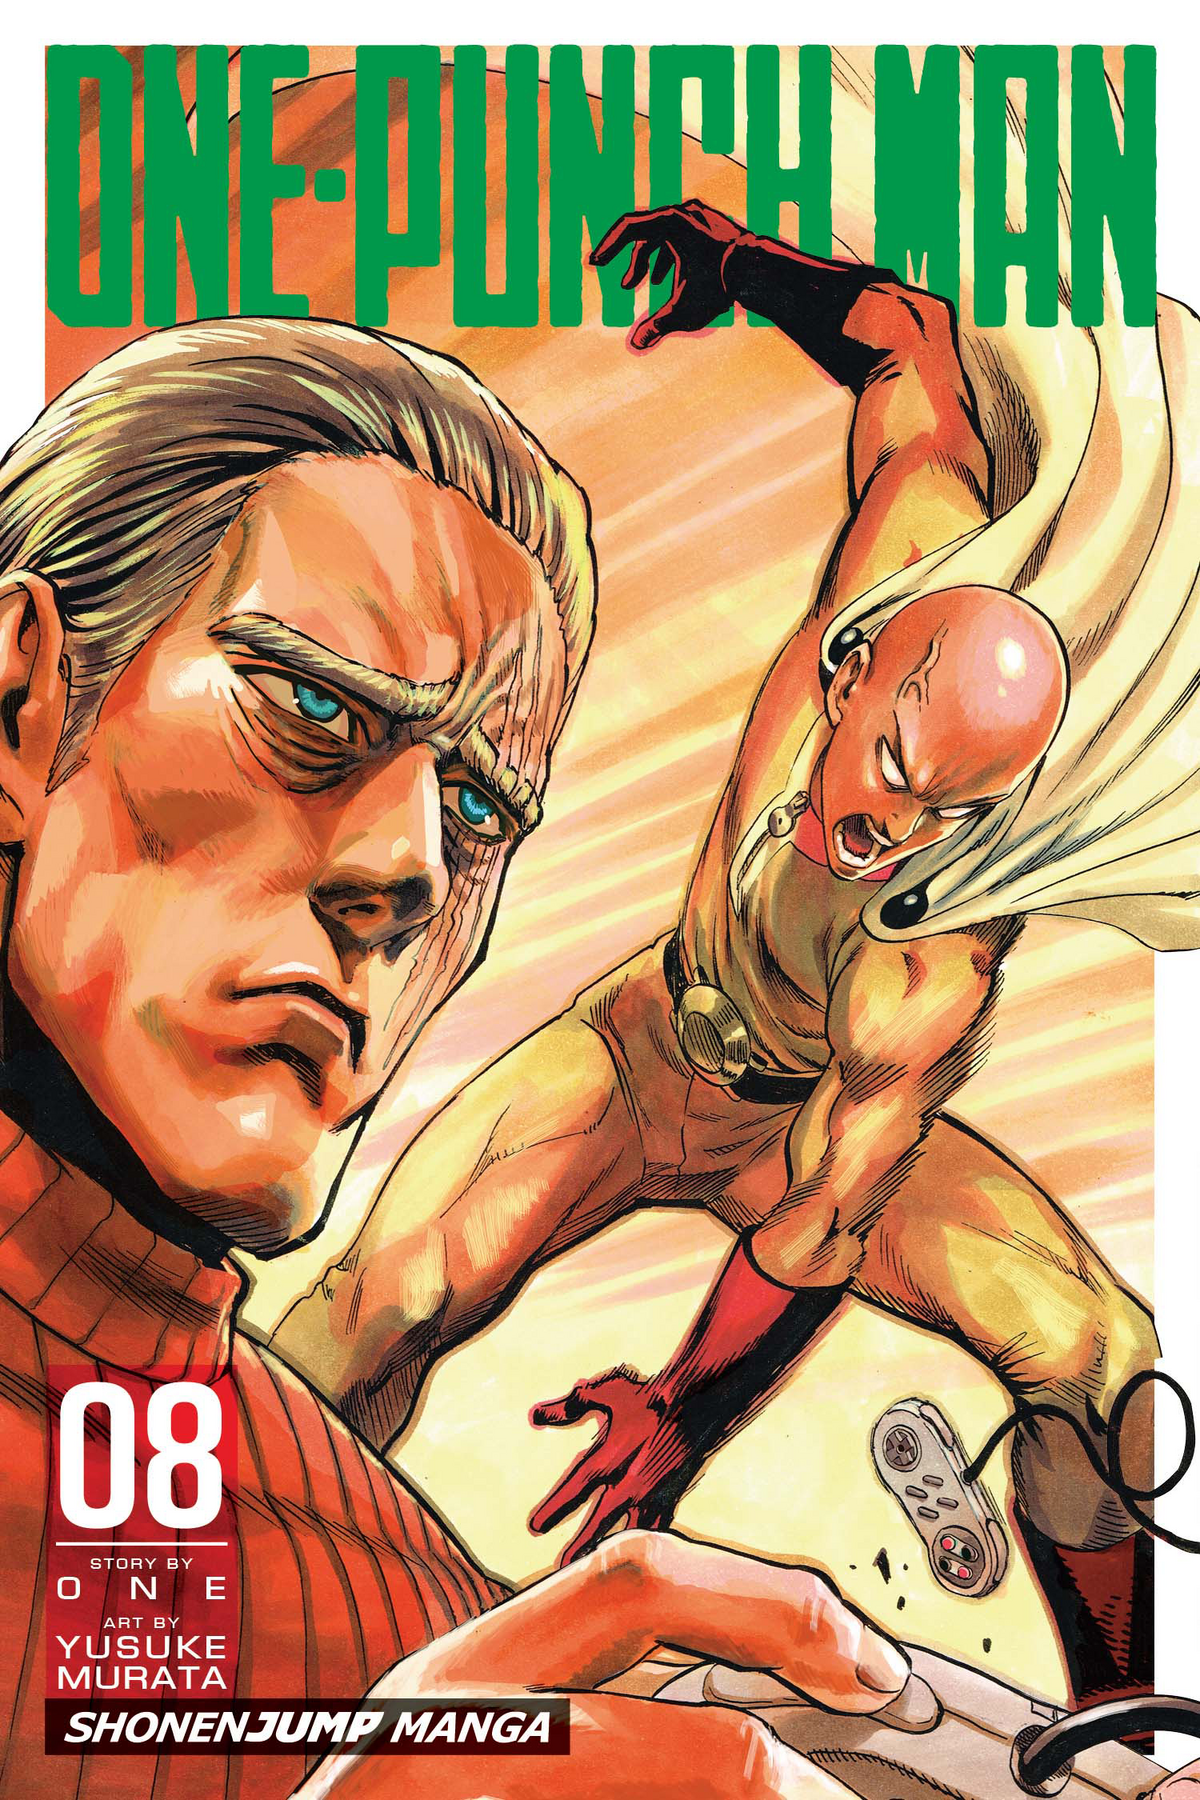 Volume 23, One-Punch Man Wiki